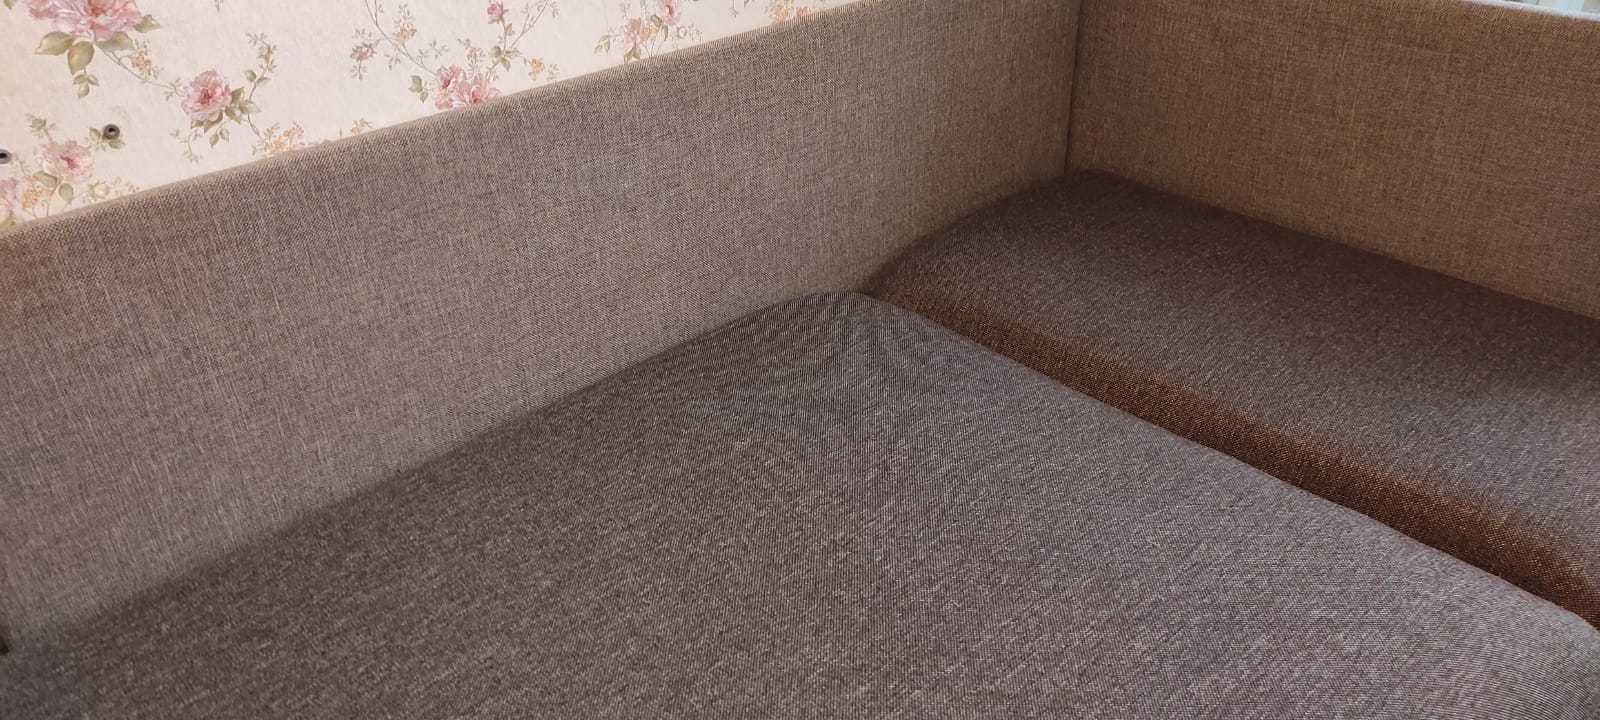 Sofa, łóżko jednoosobowe - tapczan z pojemnikiem na pościel 86x190cm